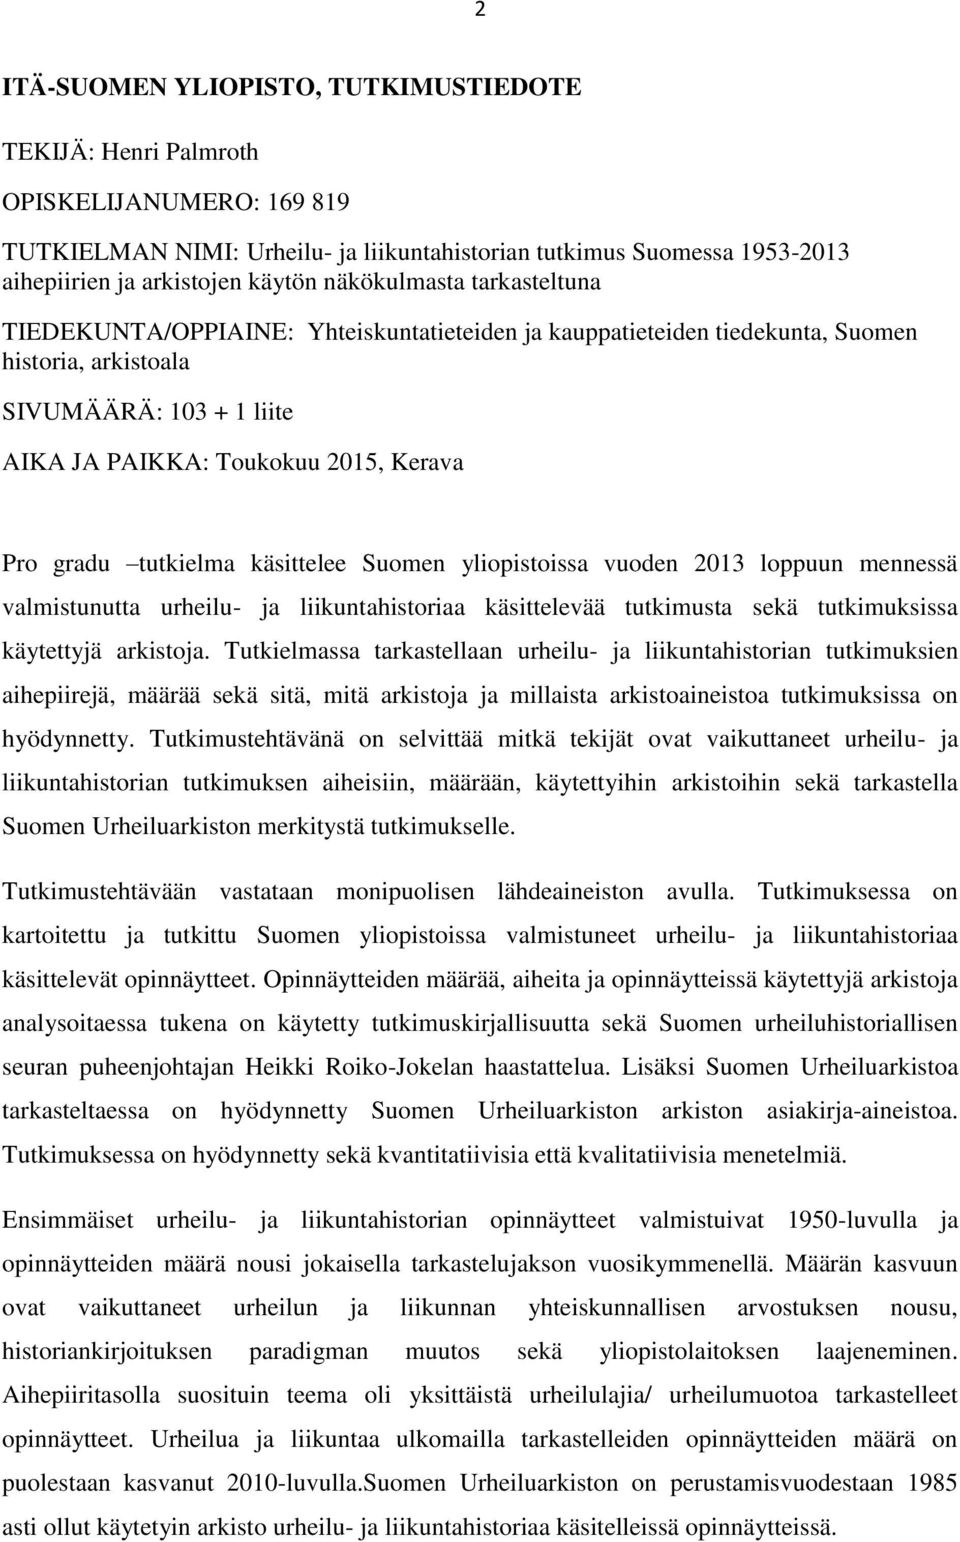 gradu tutkielma käsittelee Suomen yliopistoissa vuoden 2013 loppuun mennessä valmistunutta urheilu- ja liikuntahistoriaa käsittelevää tutkimusta sekä tutkimuksissa käytettyjä arkistoja.